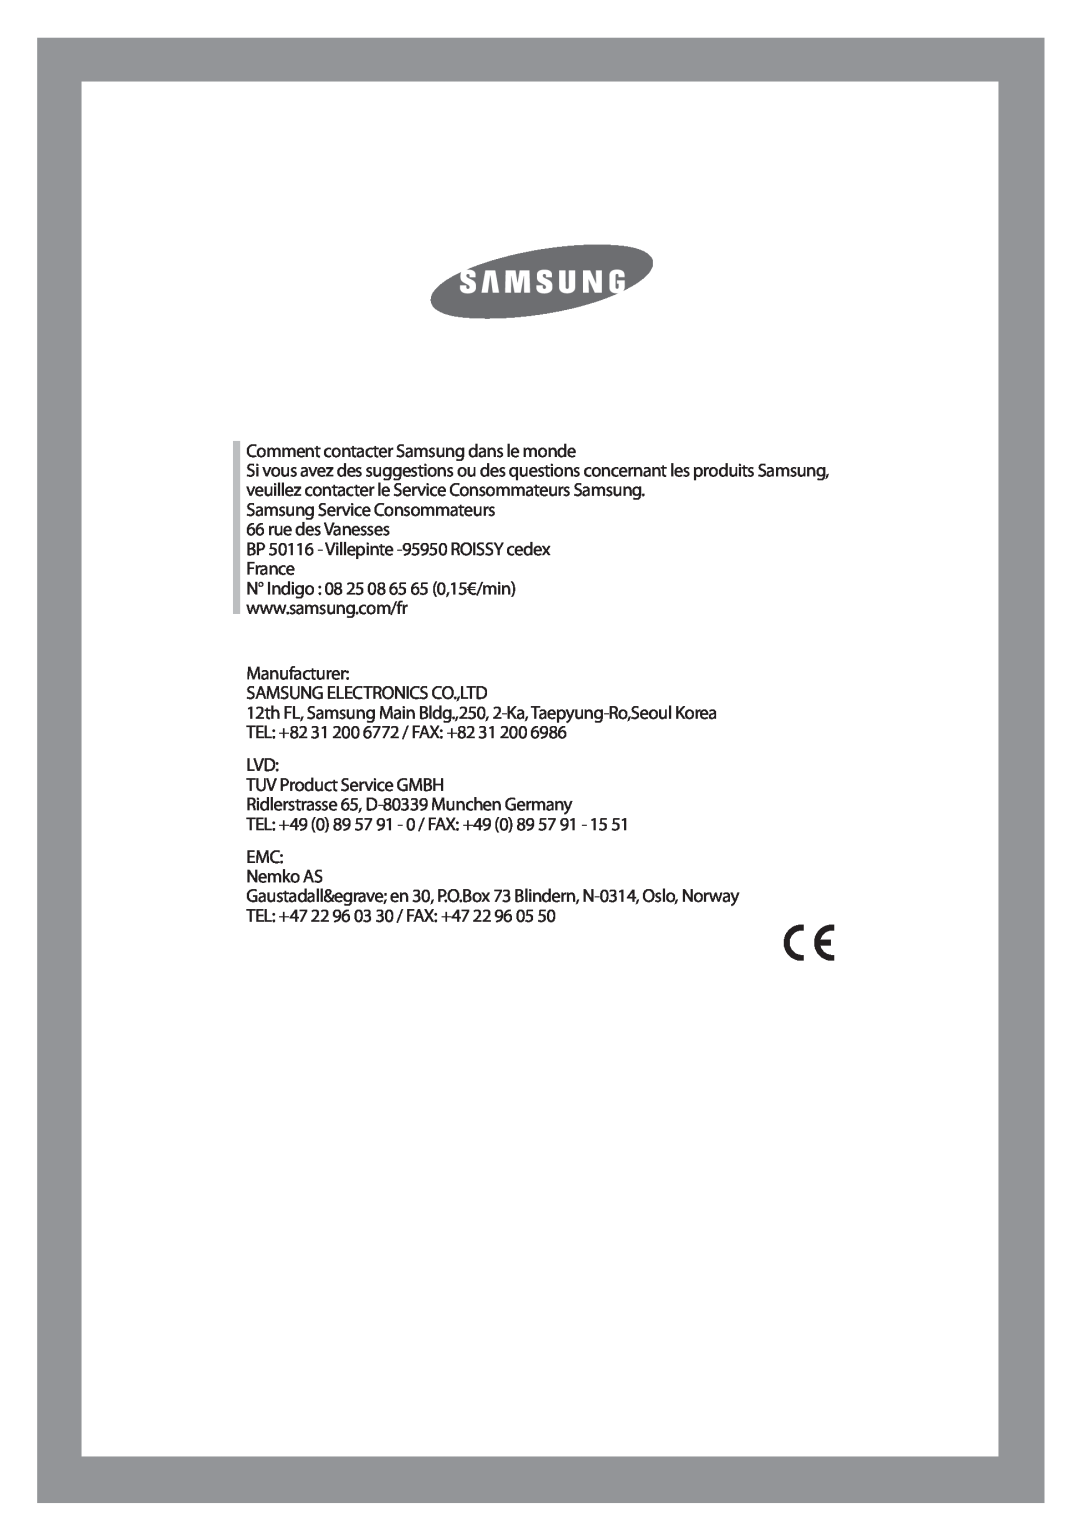 Samsung Q1457AVGW1/XEF, Q1657AVGW/XEF, Q1457AVGW/XEF, Q1457AVGS1/XEF, Q1657AVGW1/XEF Comment contacter Samsung dans le monde 